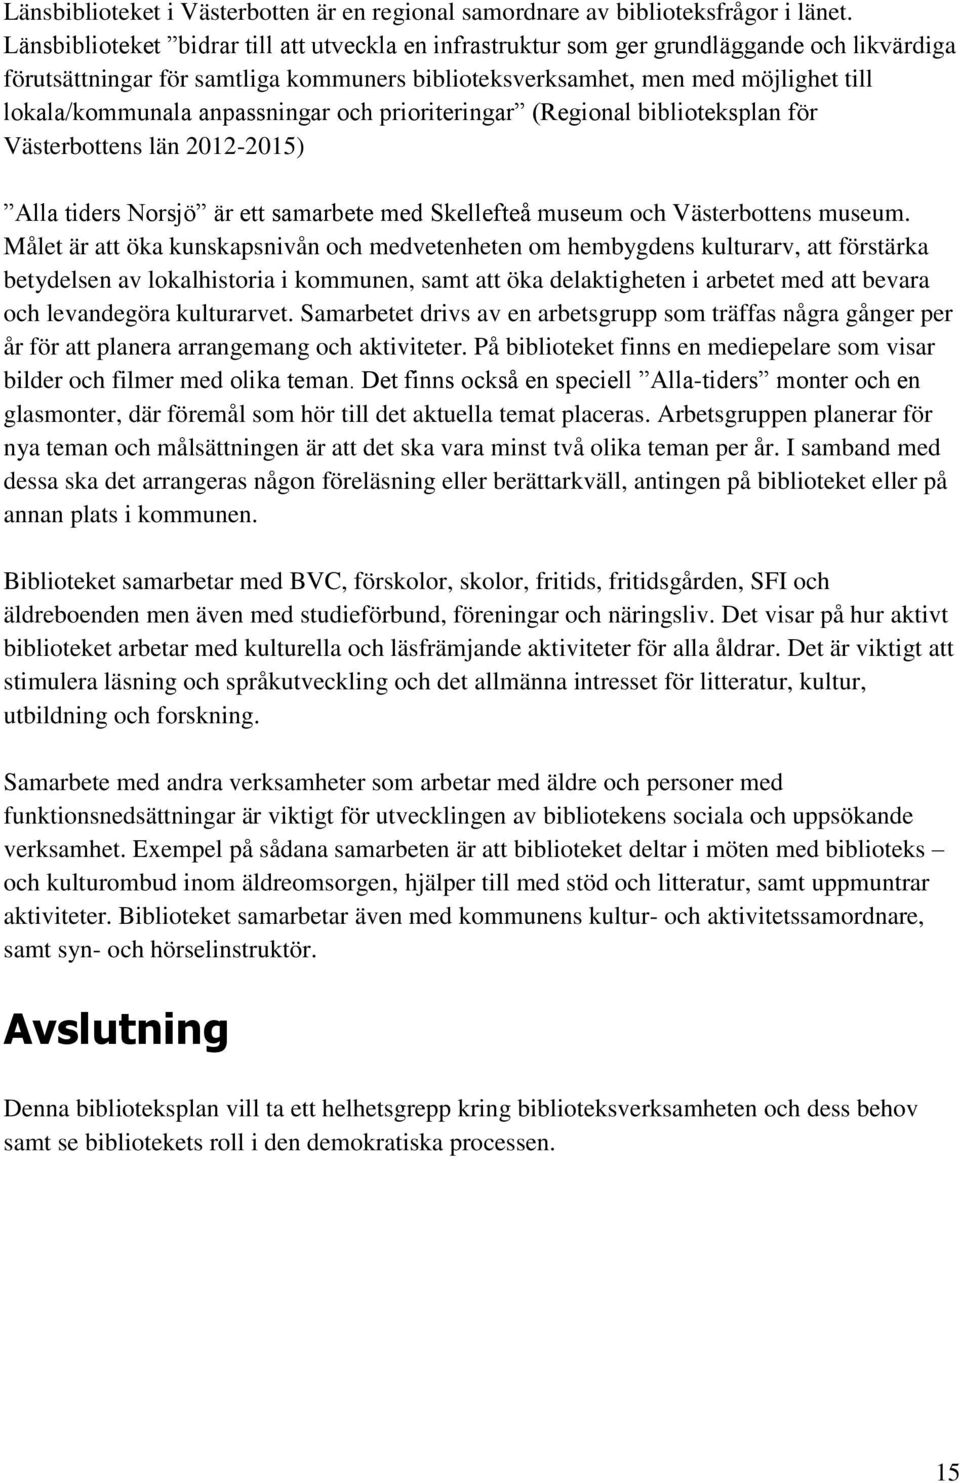 anpassningar och prioriteringar (Regional biblioteksplan för Västerbottens län 2012-2015) Alla tiders Norsjö är ett samarbete med Skellefteå museum och Västerbottens museum.